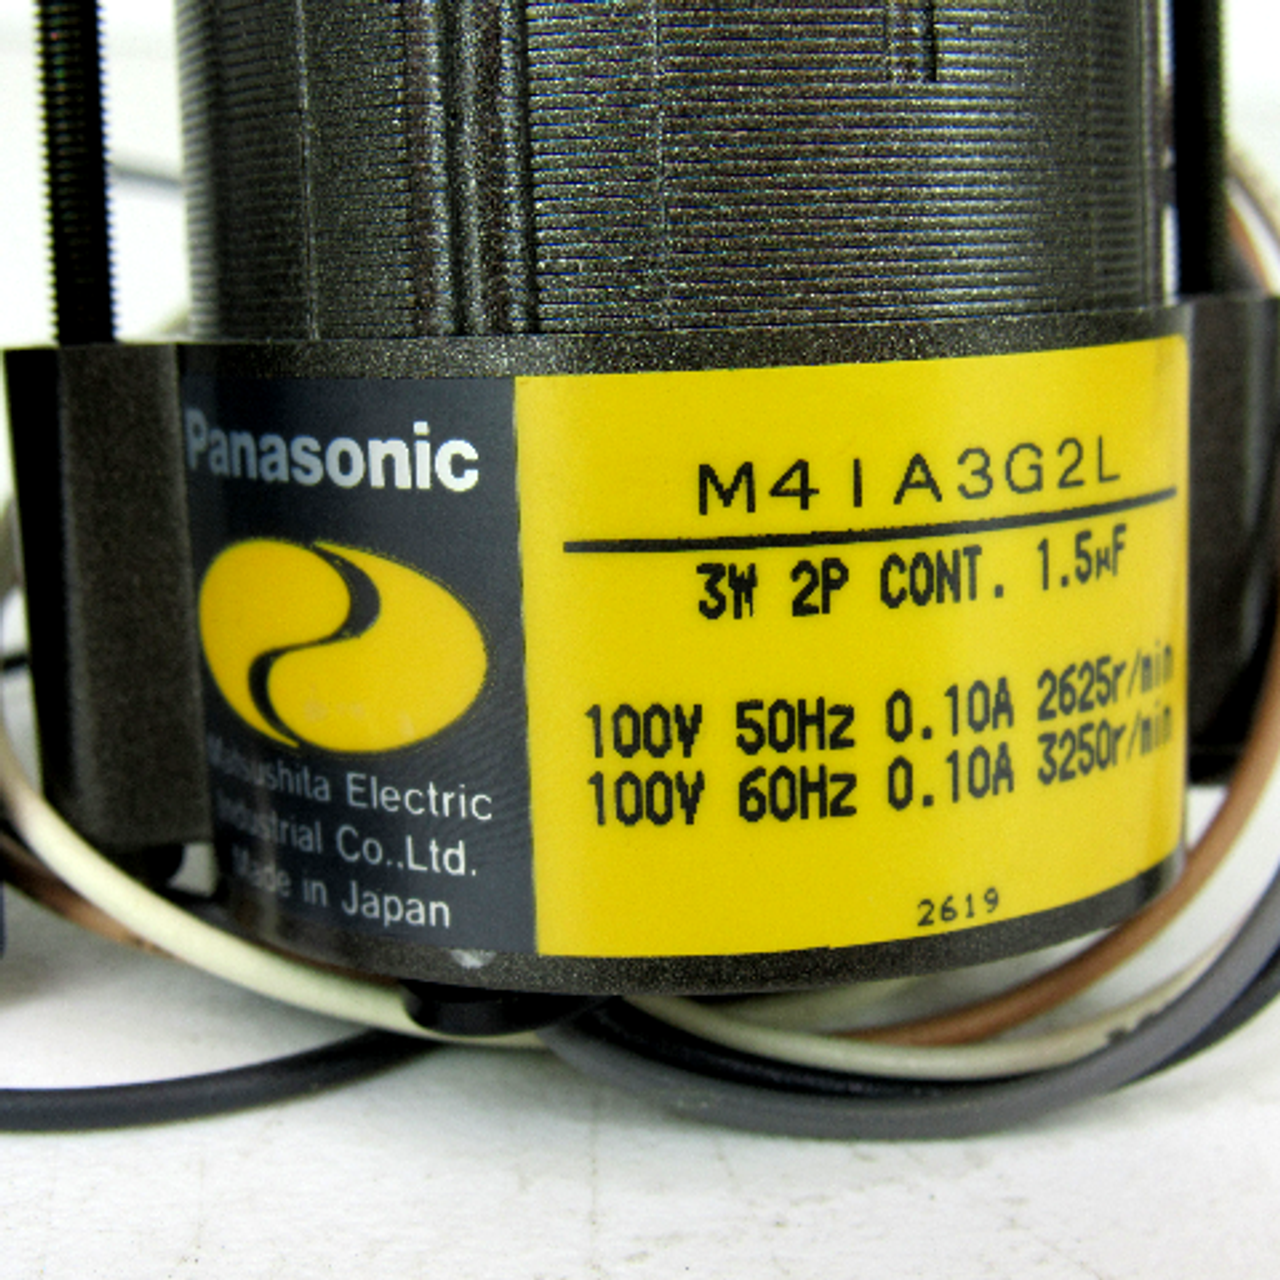 Panasonic Matsushita M4IA3G2L Induction Motor